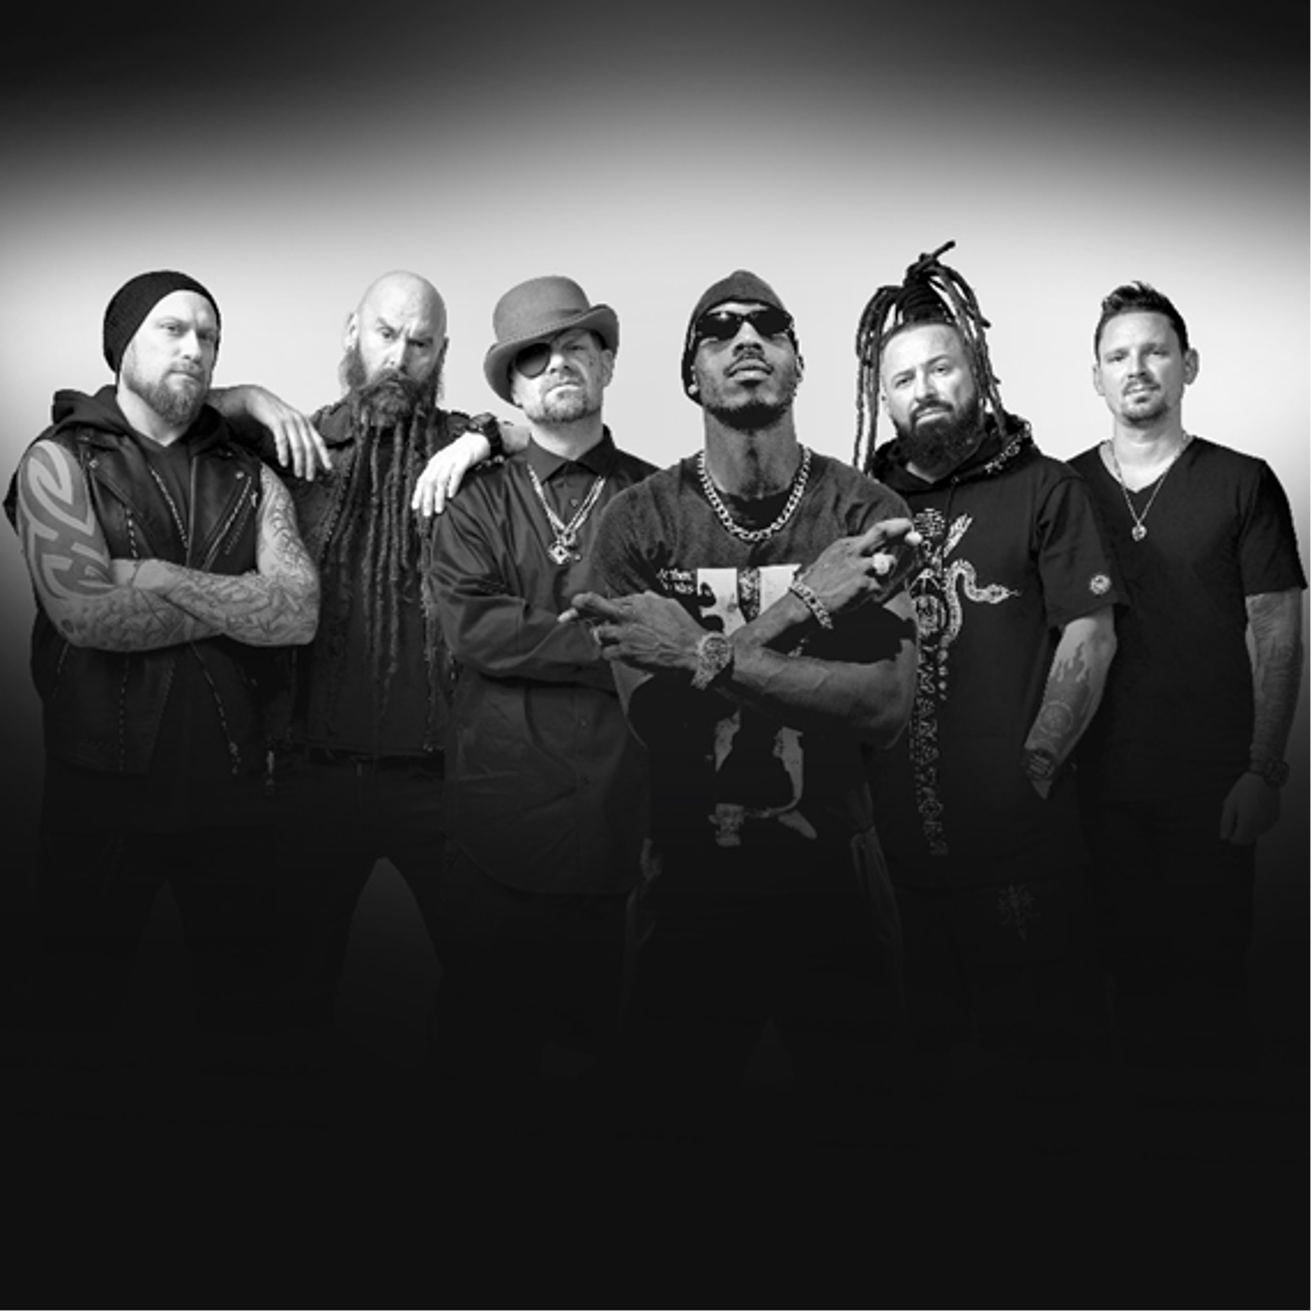 Five Finger Death Punch Revela colaboração com lenda do hip-hop DMX em novo single “This Is The Way (Feat. DMX)”